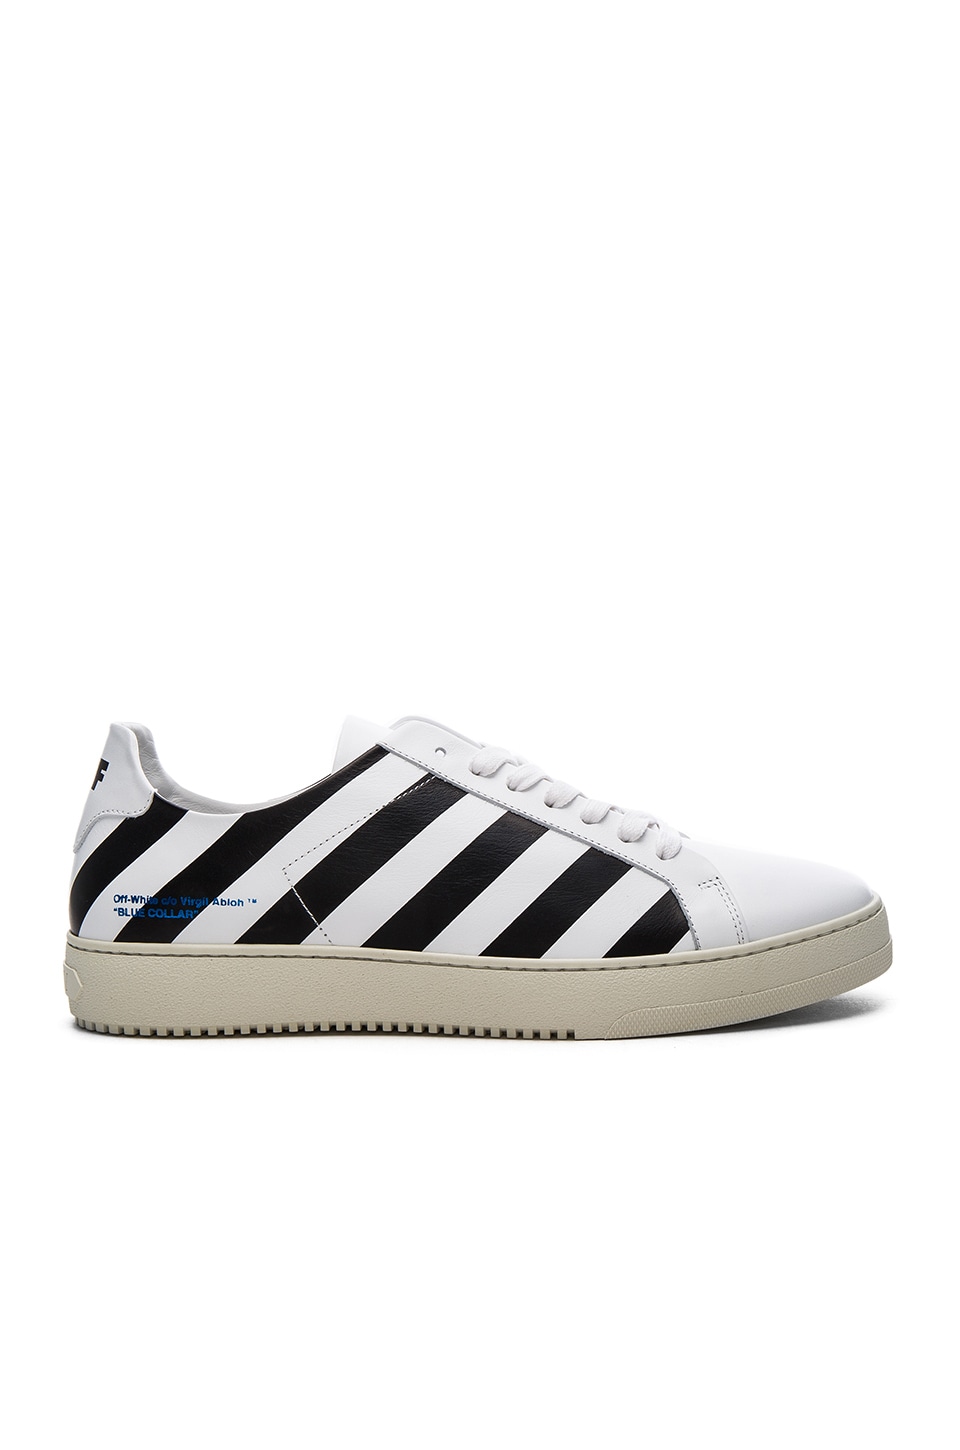 OFF-WHITE Diagonal Stripe Sneakers in White & Black | REVOLVE